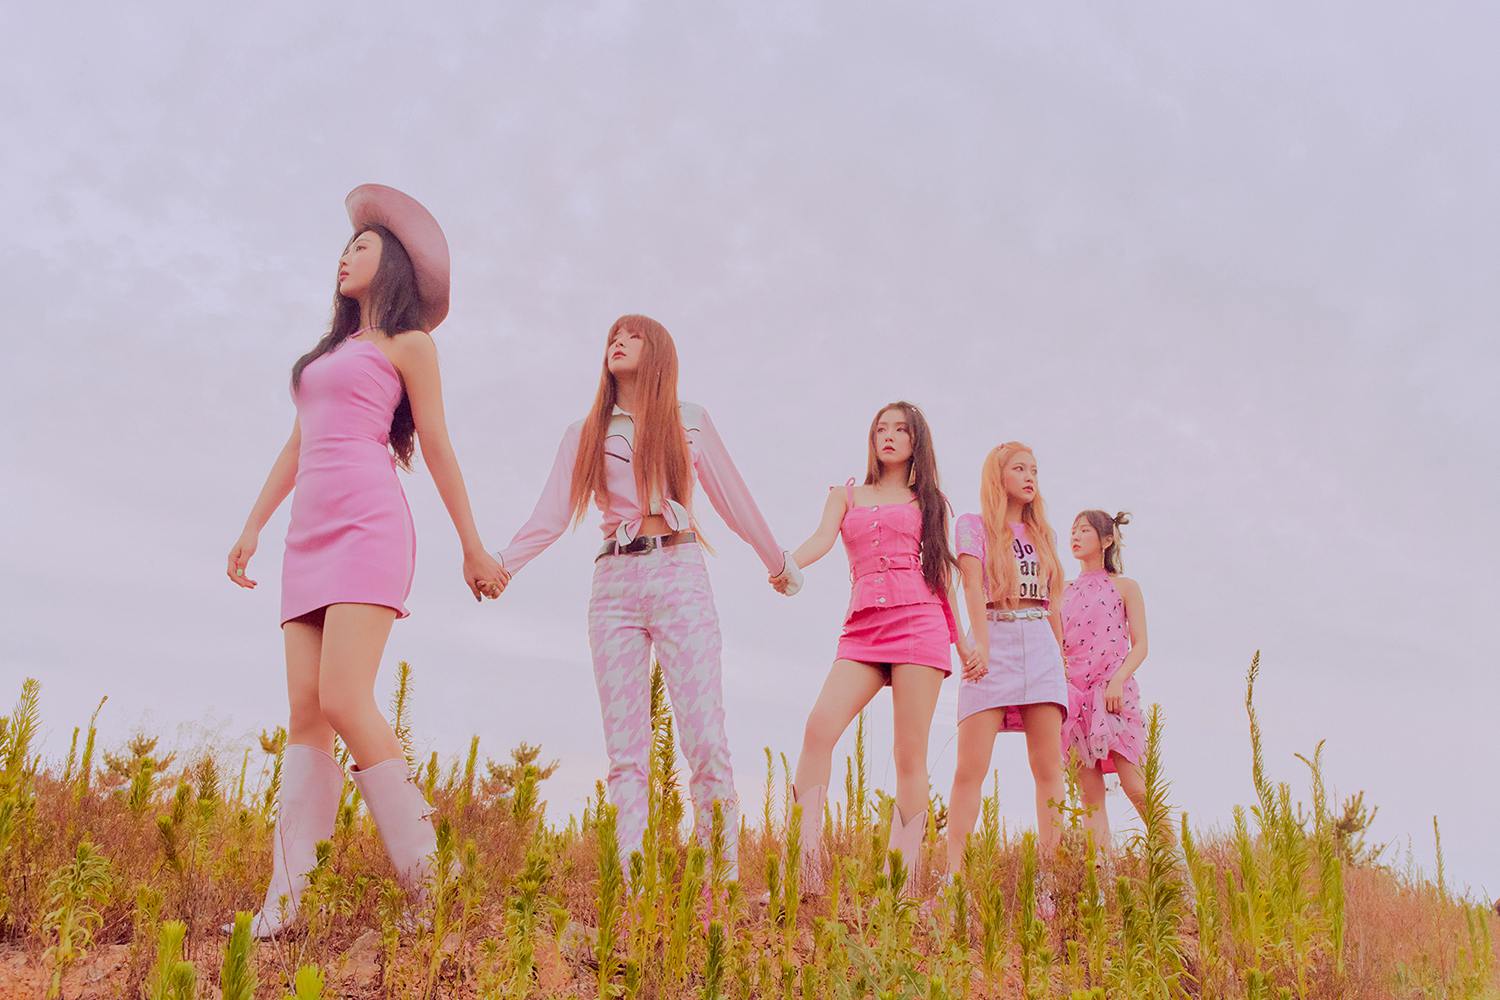 人民網訊 近日，韓國經紀公司SM娛樂公開了旗下人氣女子組合Red Velvet第三張迷你專輯《'The ReVe Festival' Day 2》的宣傳照。在公開的照片中，成員們身著格紋連衣裙，果汁美爆棚，展現了五人五色魅力。此外，Red Velvet此次回歸新輯已於8月20日正式發售，專輯公開后，主打歌《Umpah Umpah》迅速登上genie、bugs、naver music、ollehmusic、mnet music、soribada等各大音源榜榜首，並登頂36個國家和地區的iTunes榜單，再次印証了“夏日女王”的超強號召力。